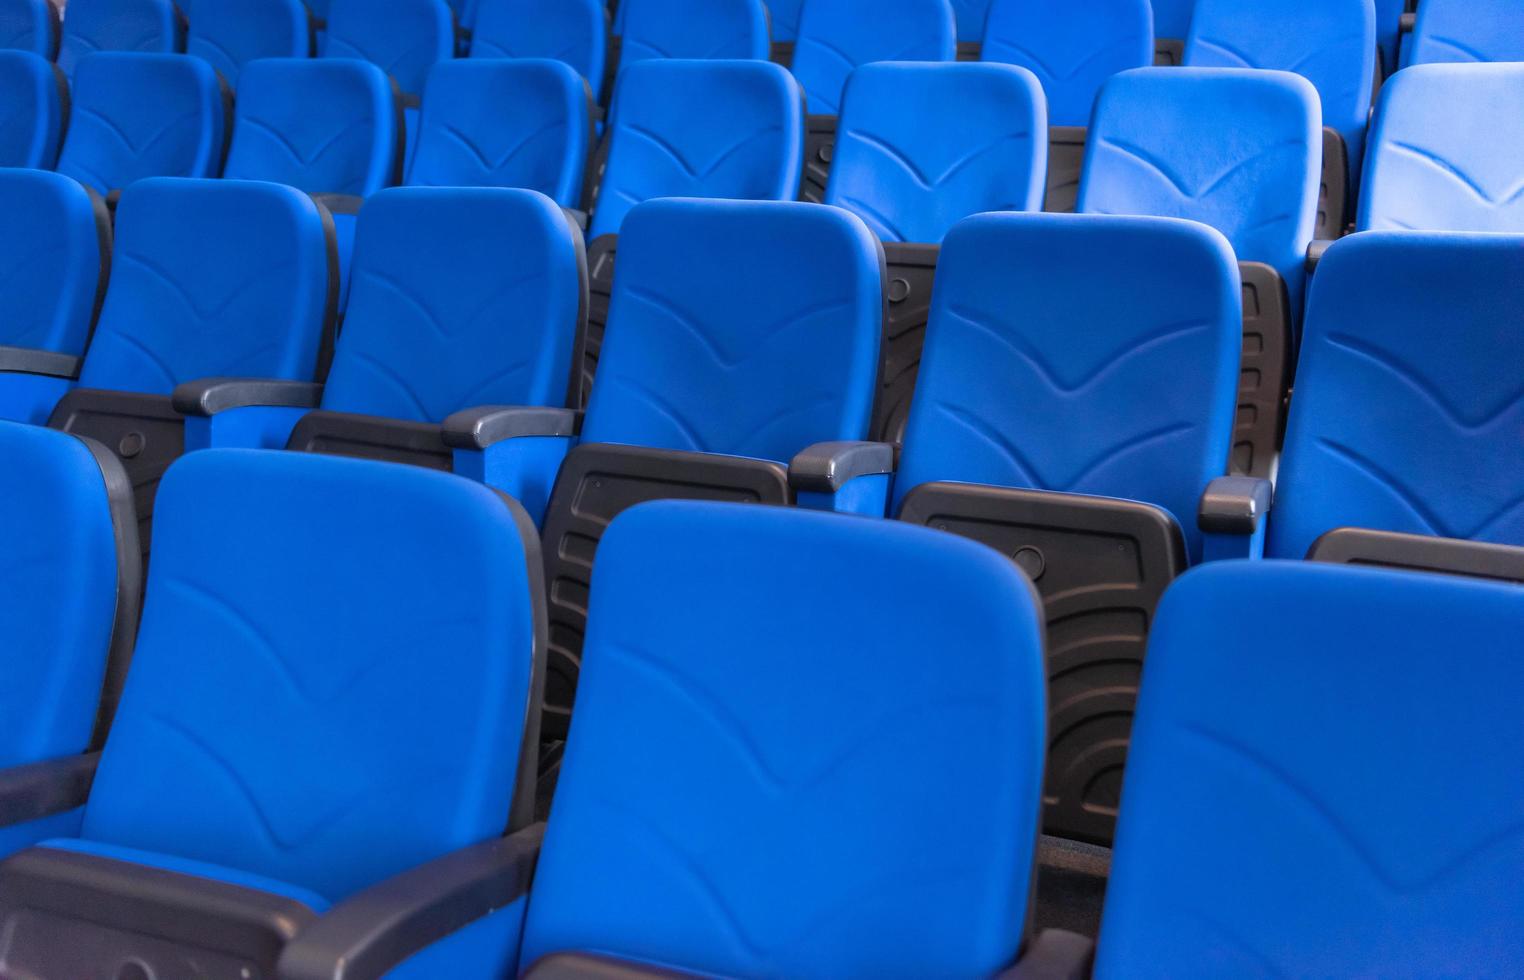 salle avec des rangées de sièges bleus photo